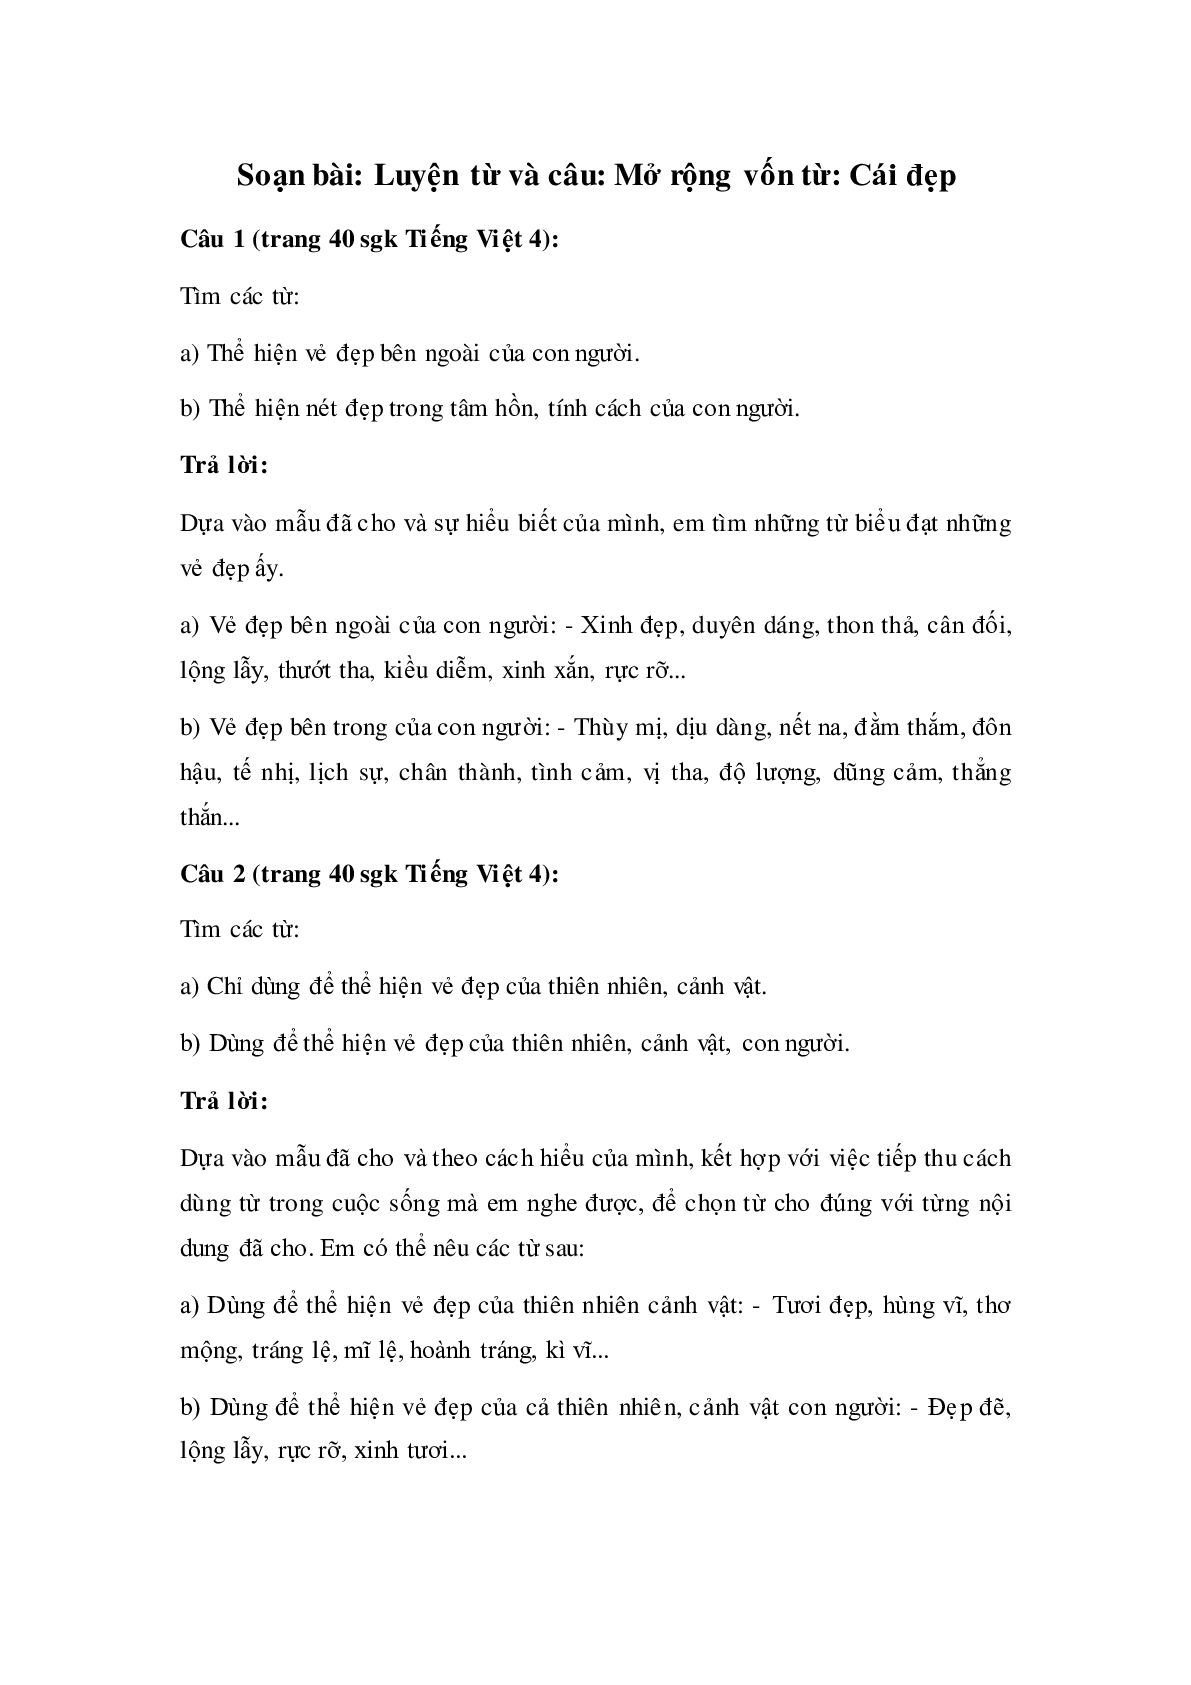 Soạn Tiếng Việt lớp 4: Luyện từ và câu: Mở rộng vốn từ- Cái đẹp mới nhất (trang 1)